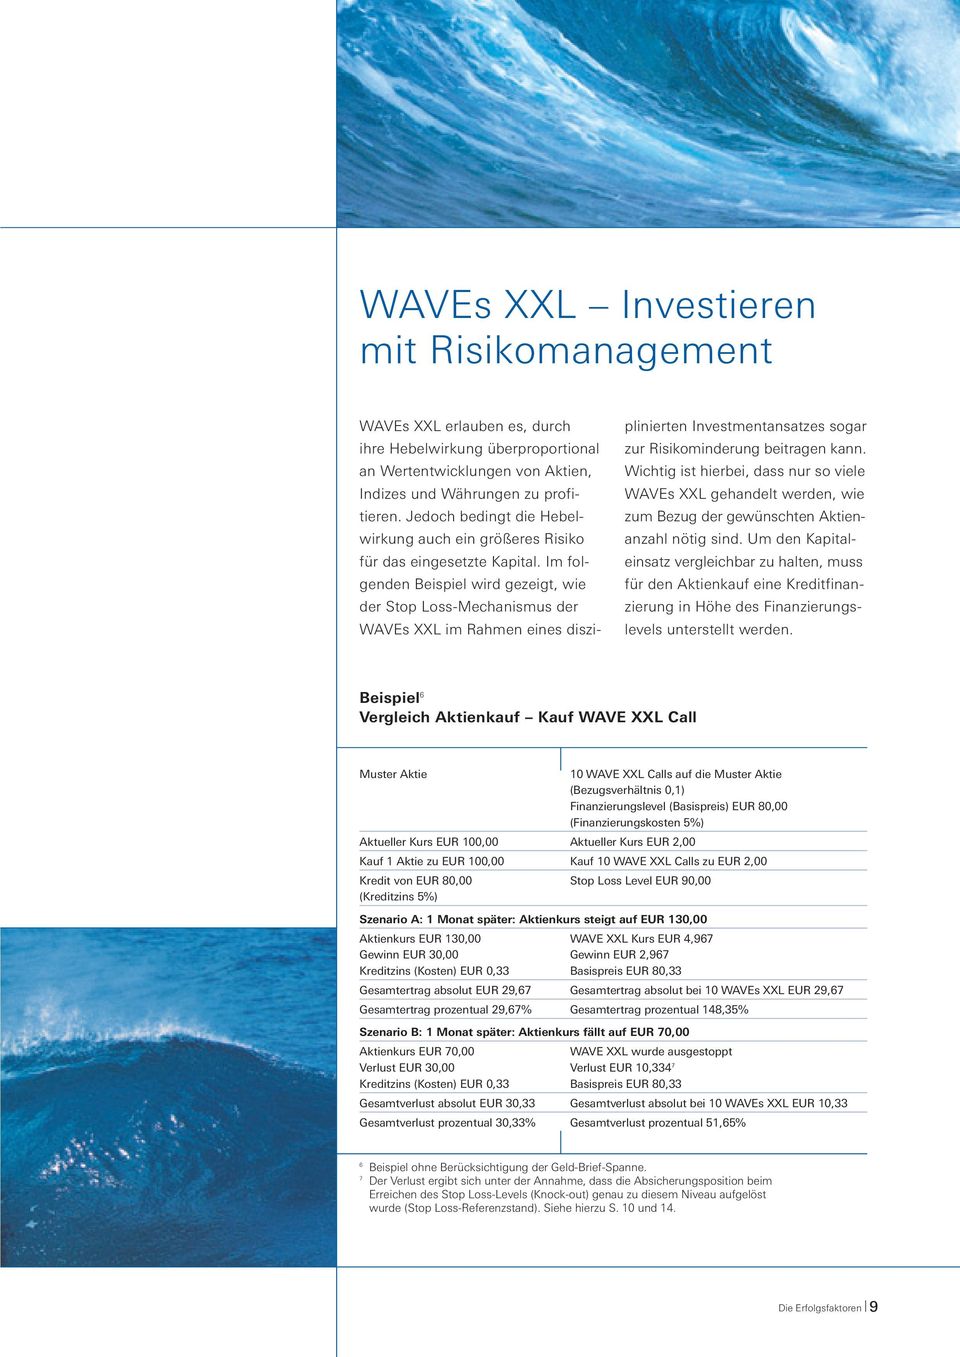 Im folgenden Beispiel wird gezeigt, wie der Stop Loss-Mechanismus der WAVEs XXL im Rahmen eines diszi- plinierten Investmentansatzes sogar zur Risikominderung beitragen kann.